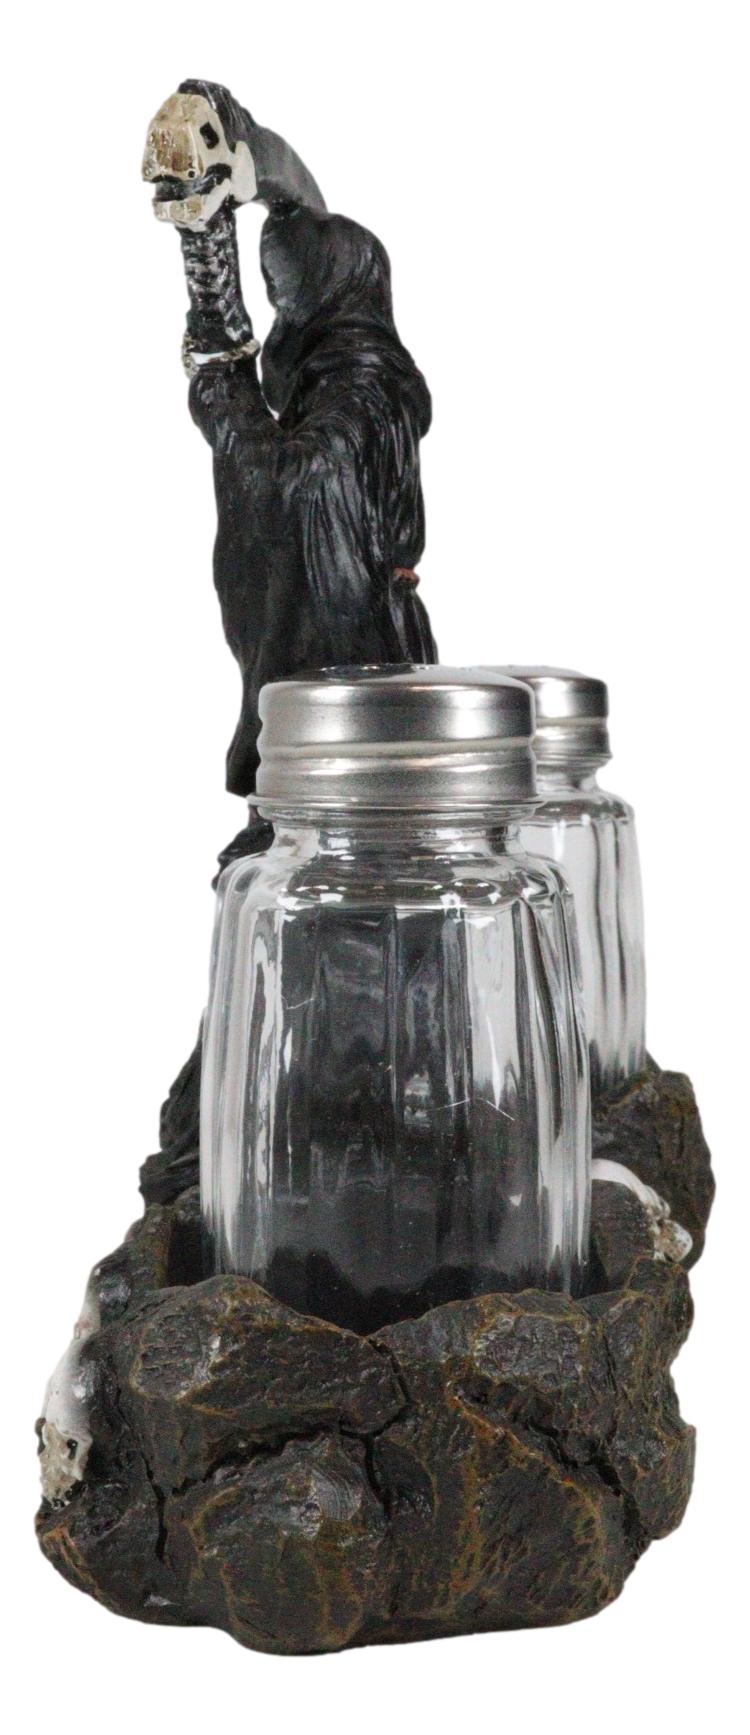 Grim Reaper Standing On Skull Graveyard Salt & Pepper Shakers Holder Set